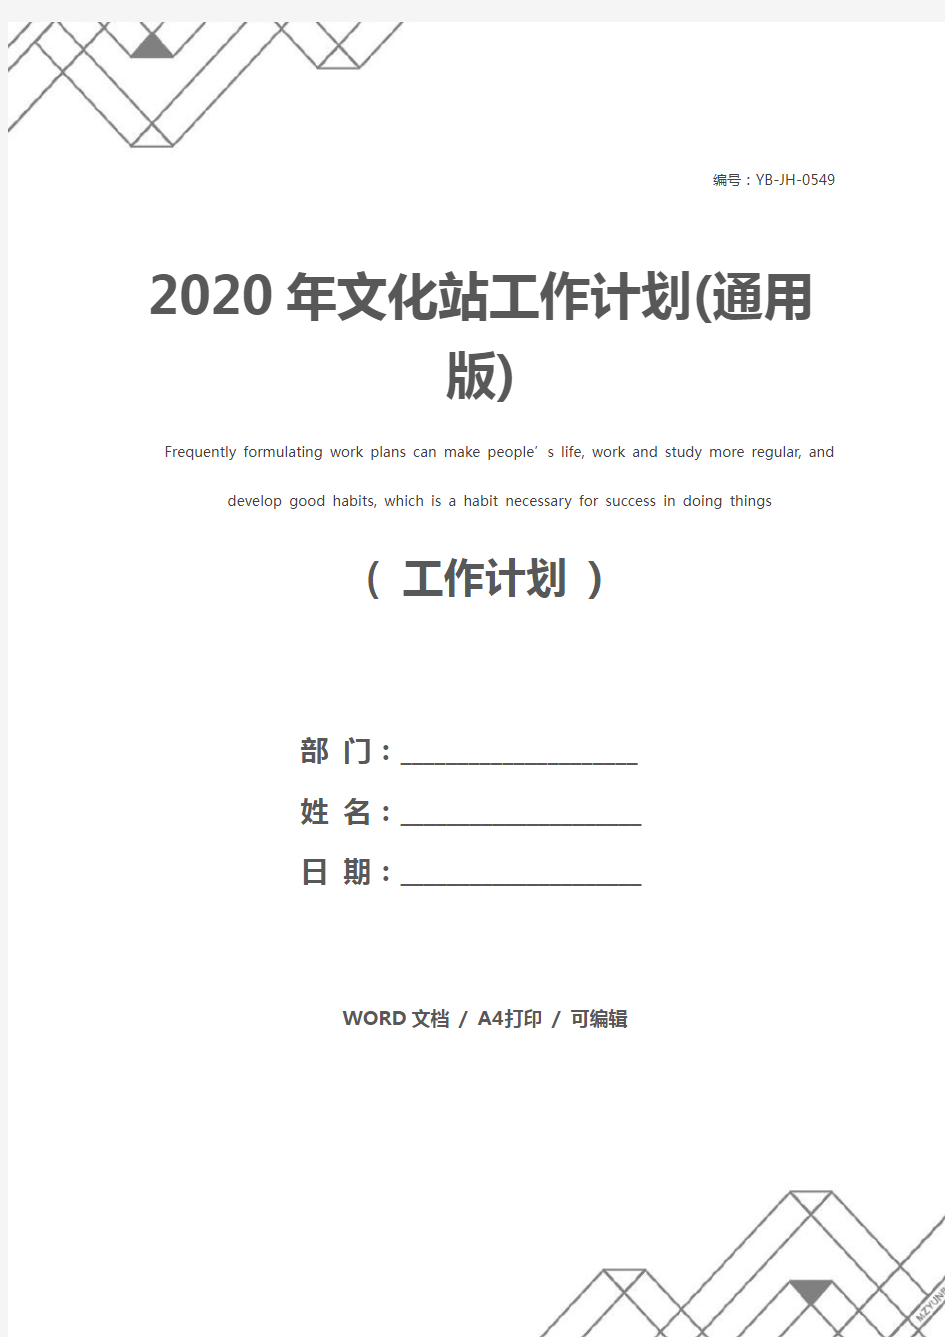 2020年文化站工作计划(通用版)